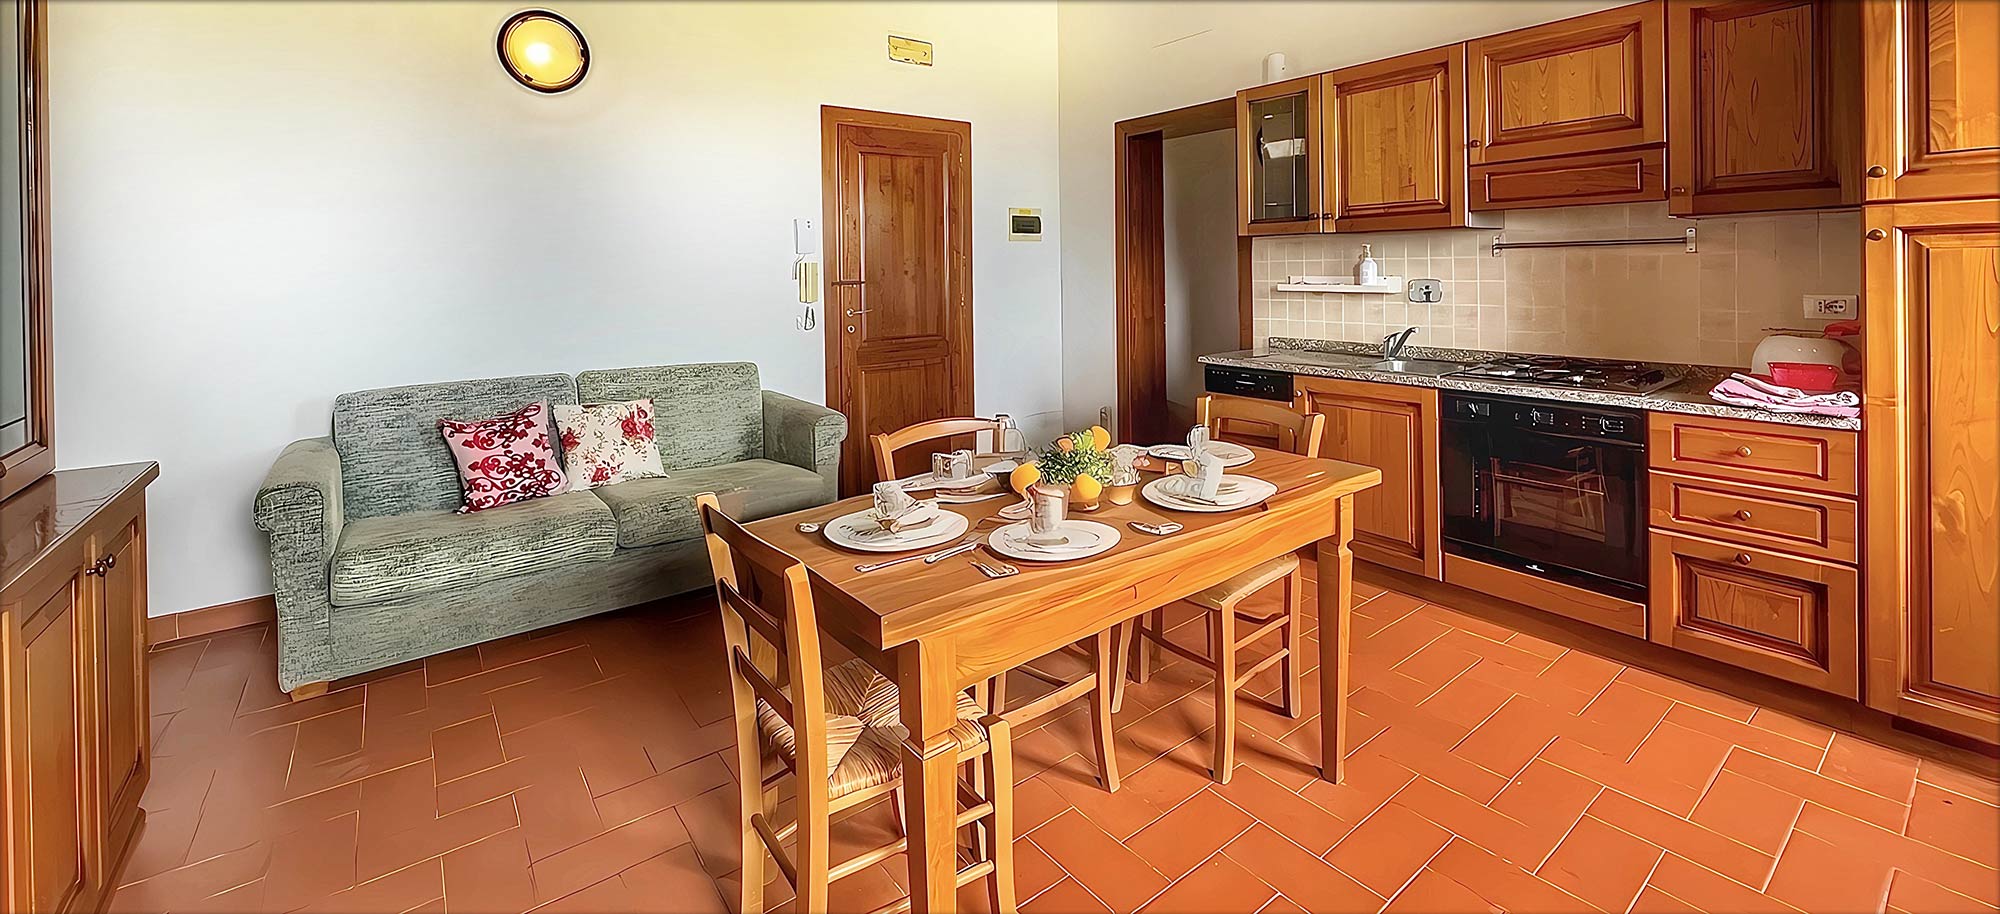 Corte Tommasi - Residence turistico - 300 - Appartamento per vacanze con piscina in Toscana